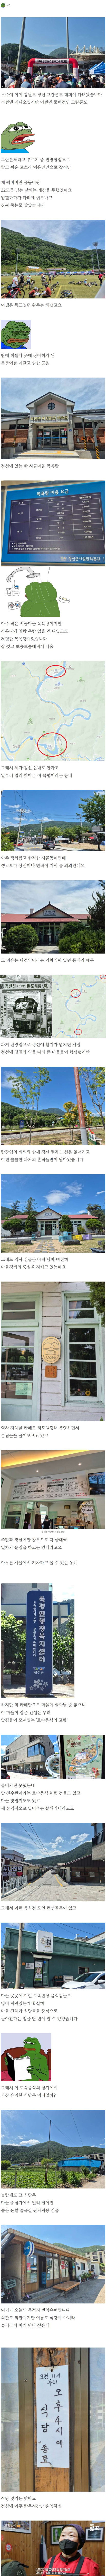 강원도 ''슈퍼'' 비빔밥 리뷰